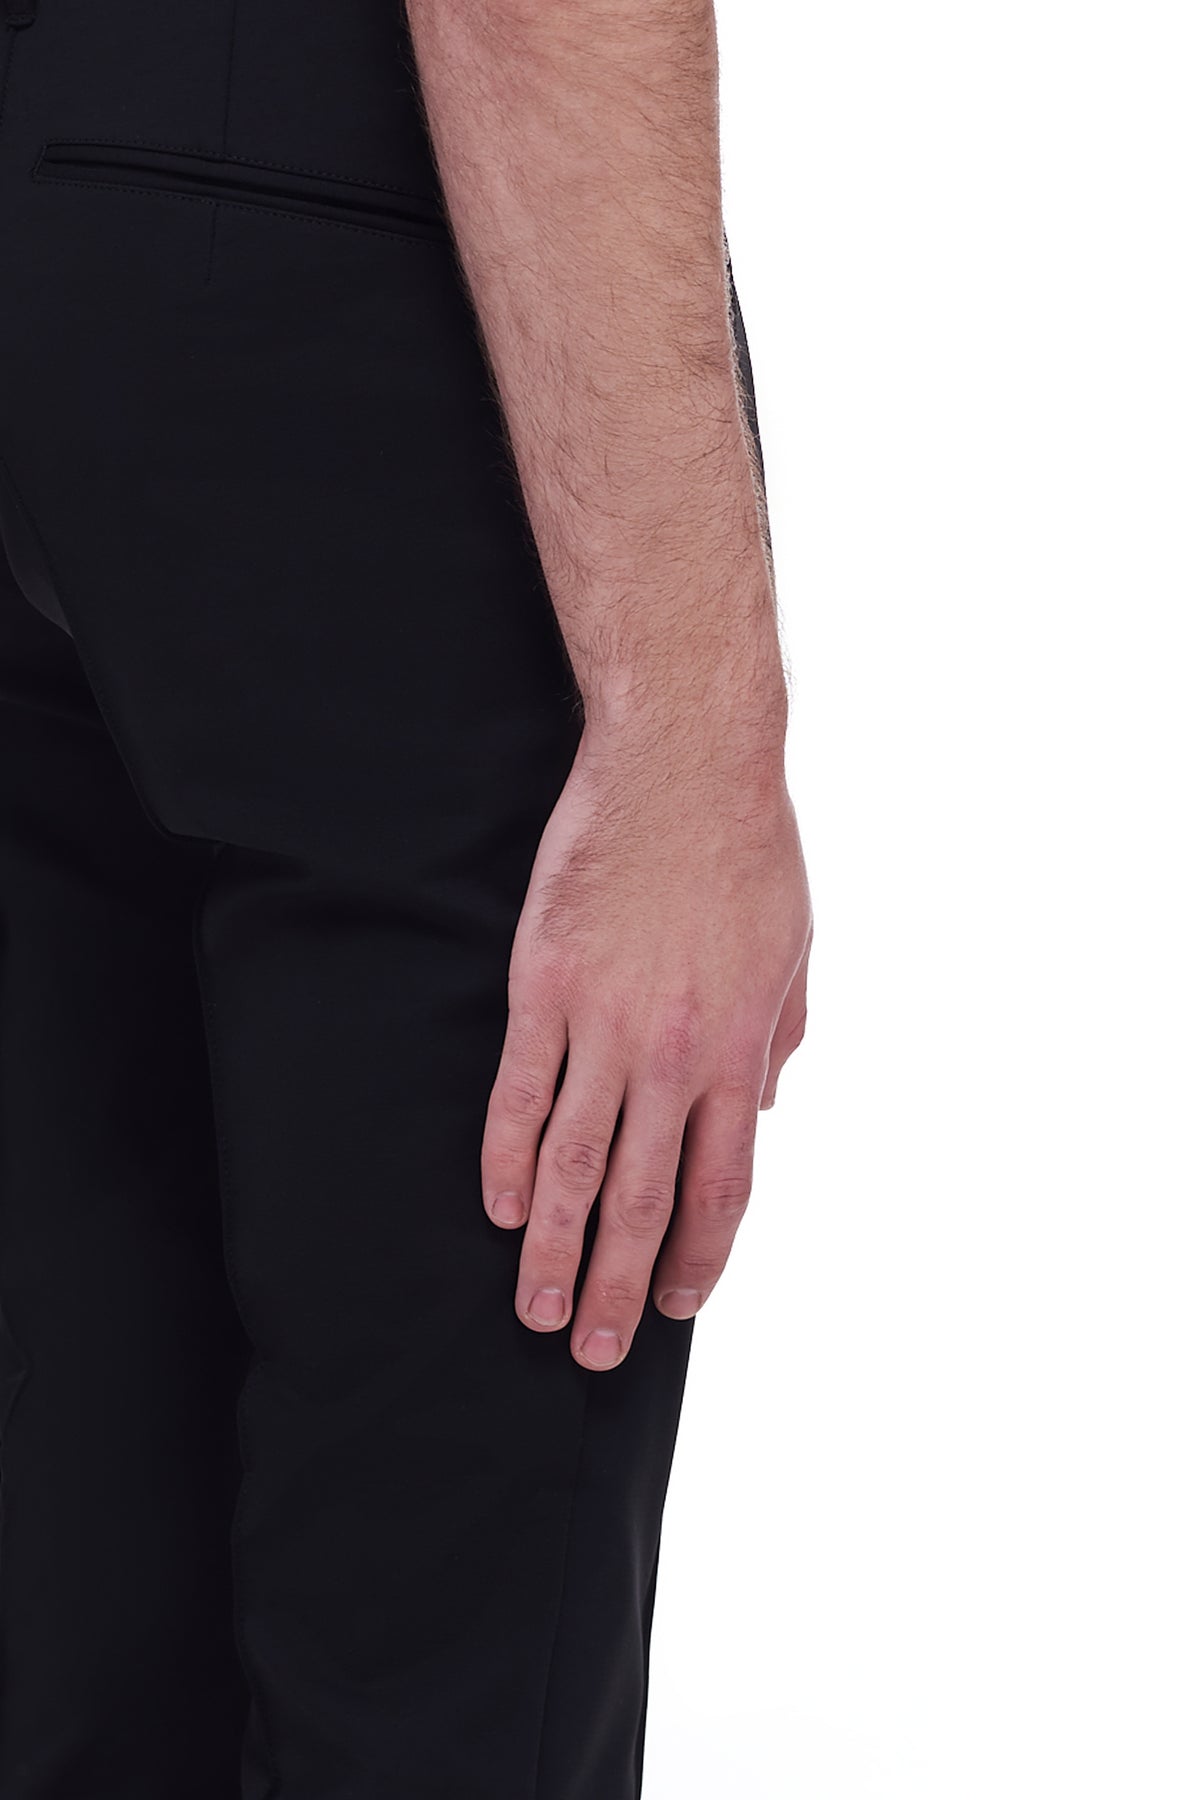 Tech Trousers (AP11-222-BLACK)